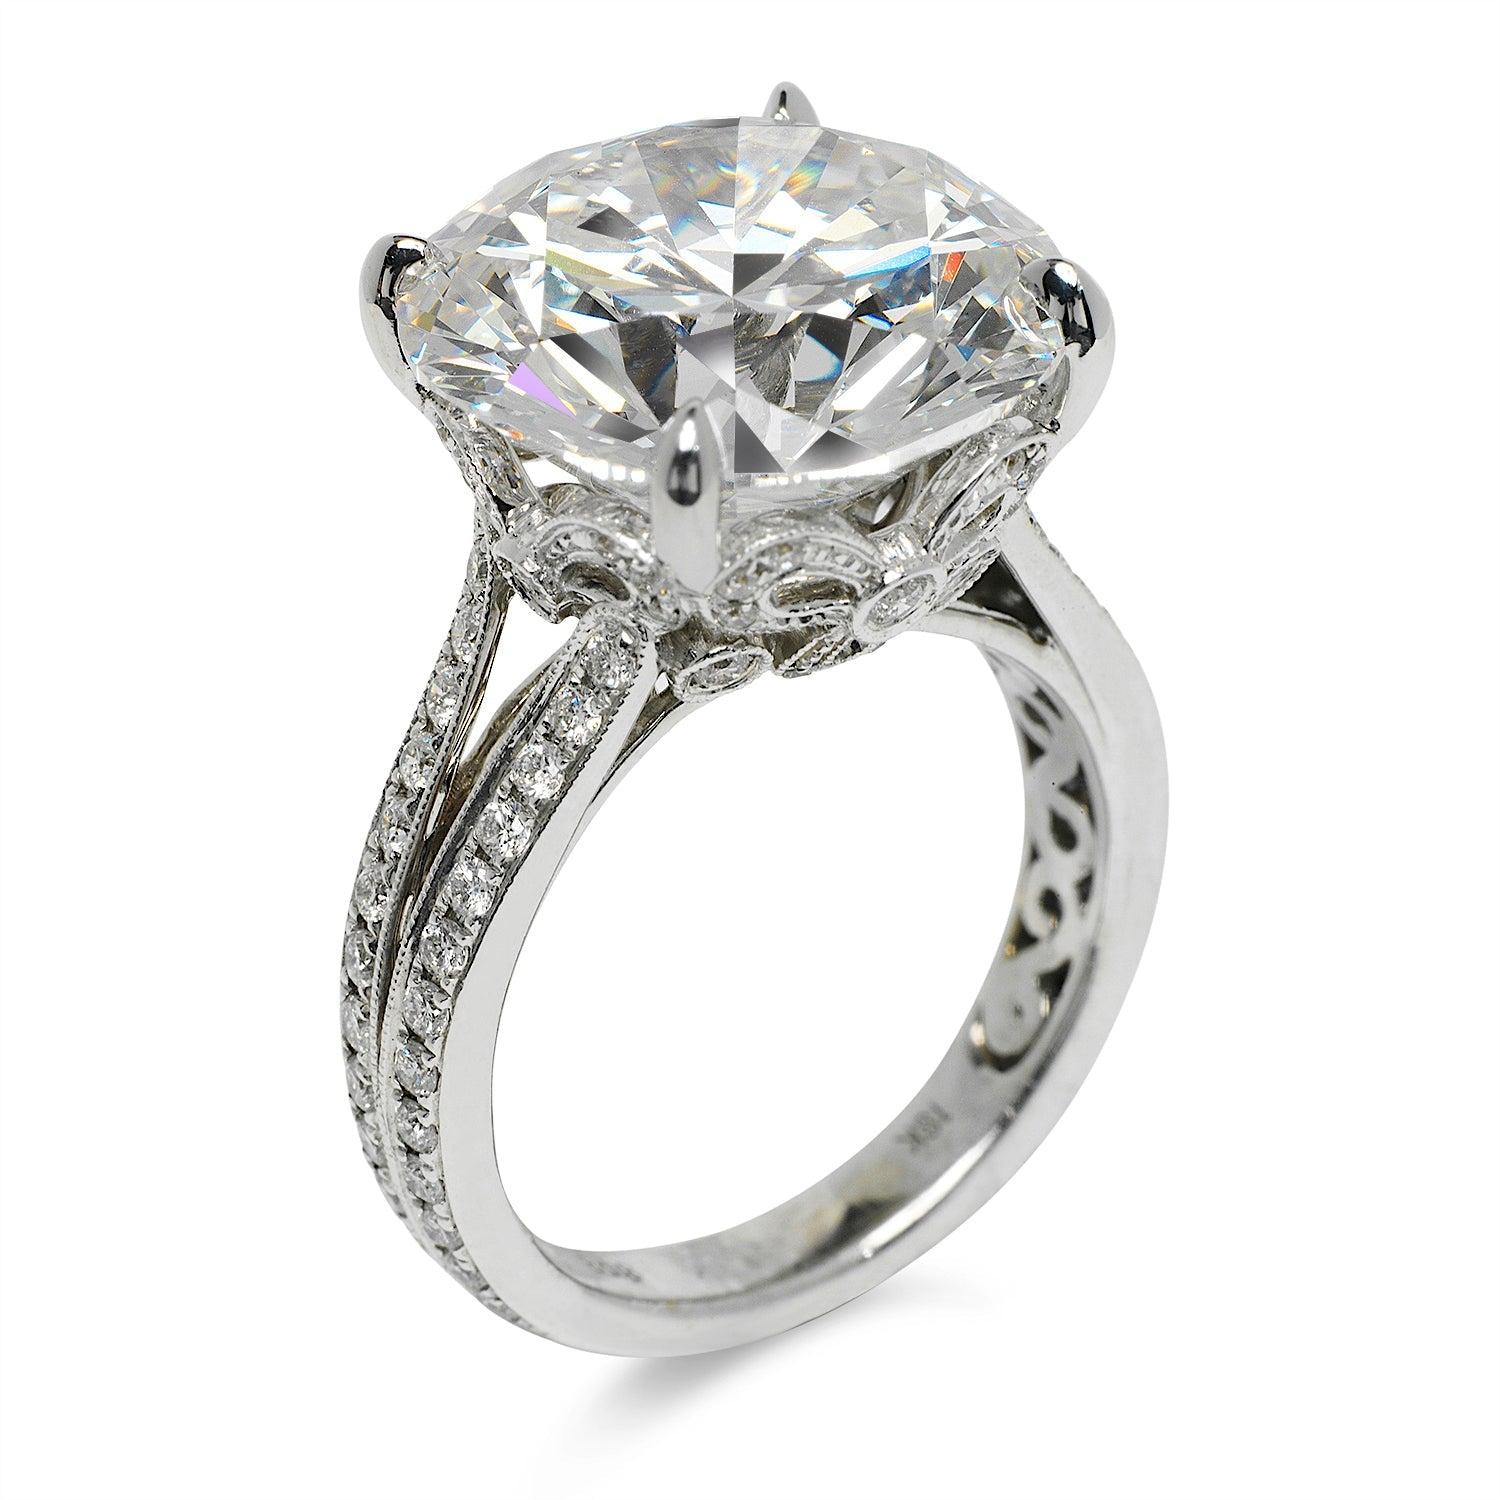 12 carat diamond price